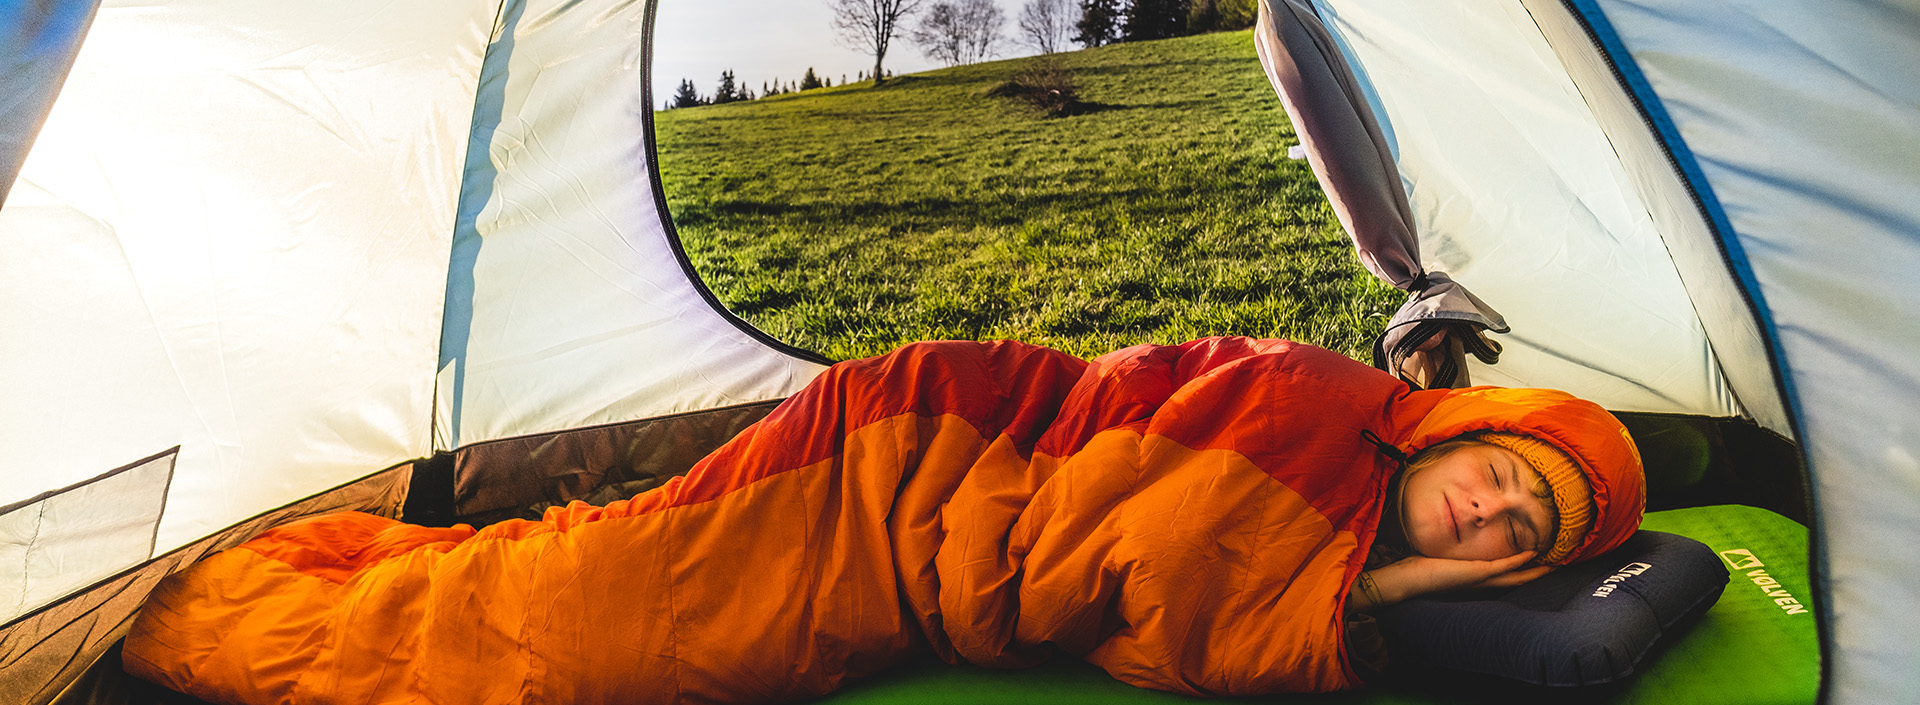 osoba spiąca w śpiworze wewnątrz namiotu